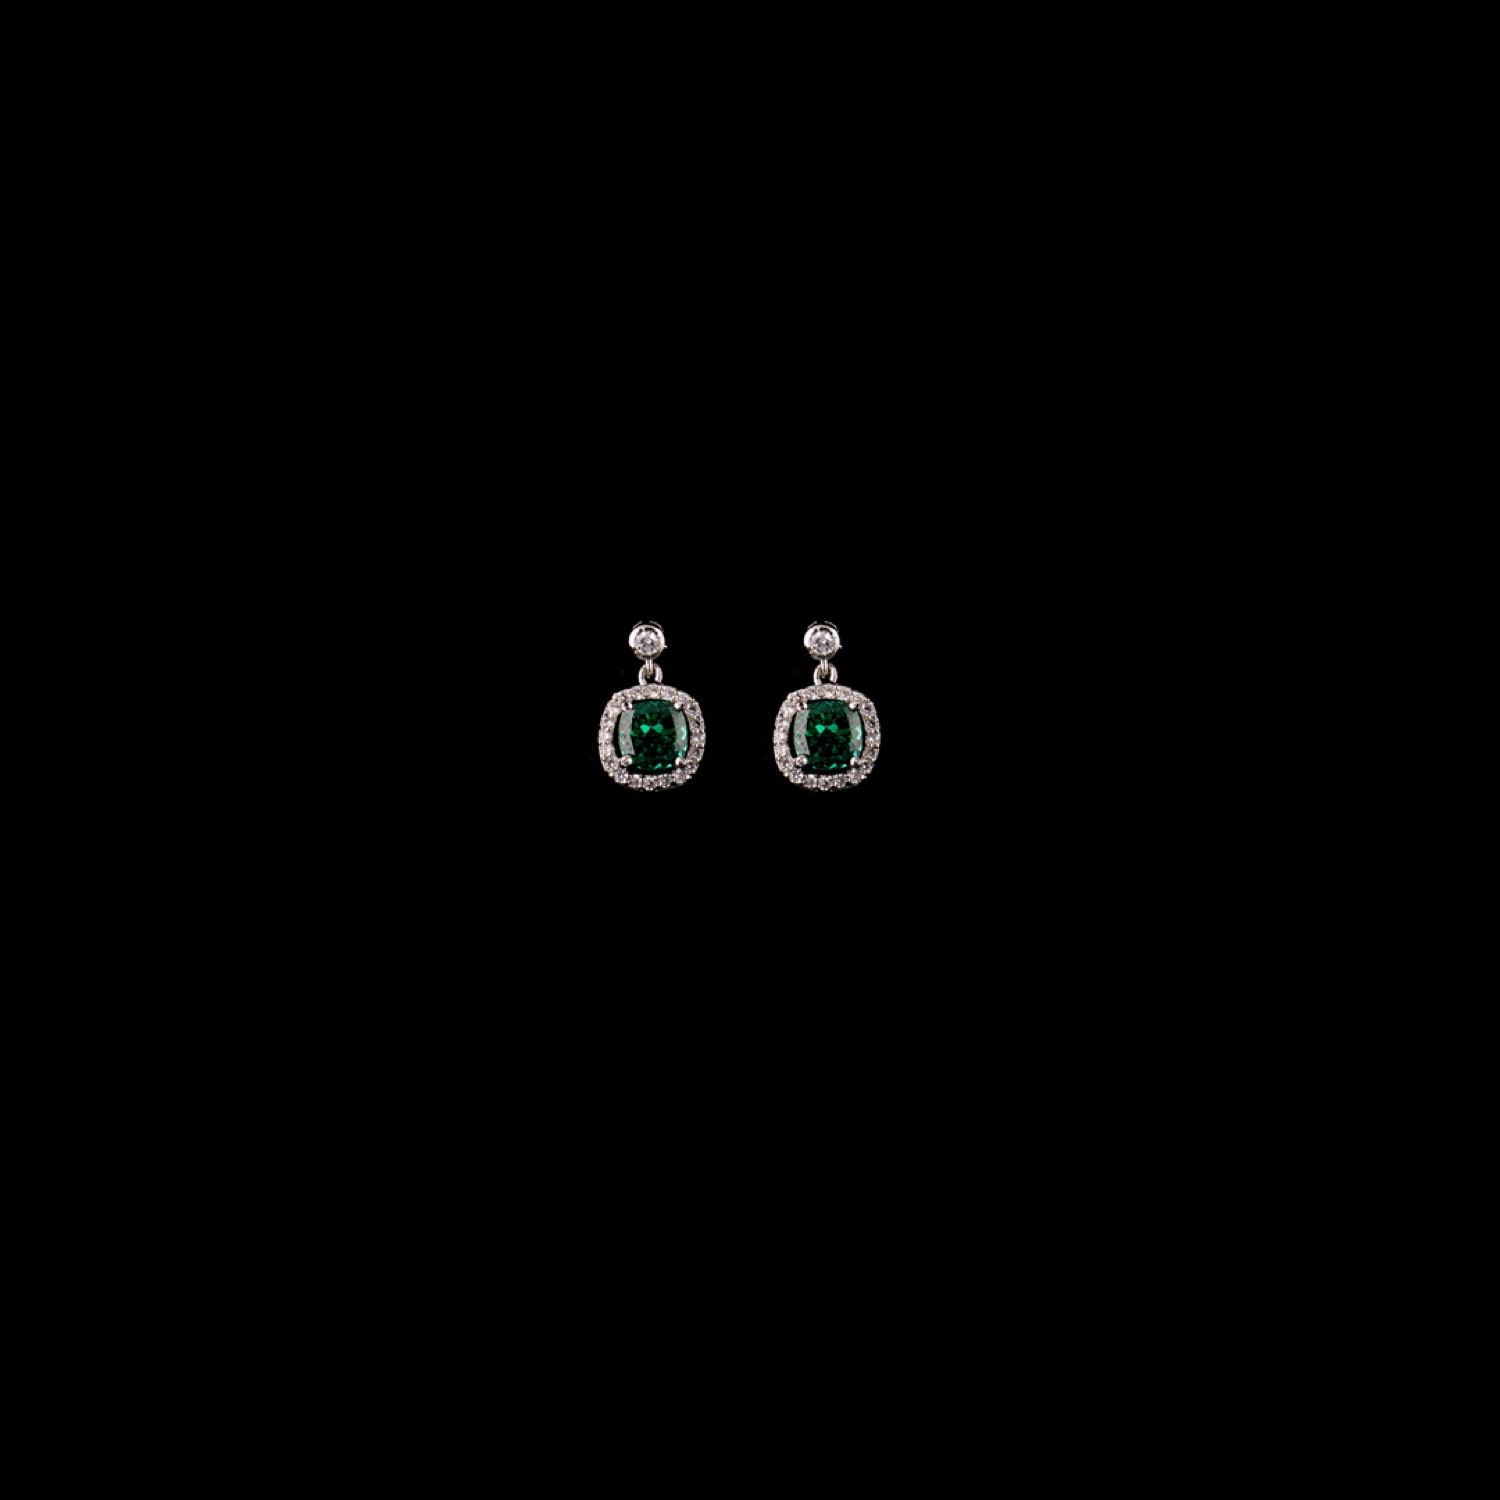 varam_earrings_102022_cushion_cut_green_stone_dangler_silver_earrings-1